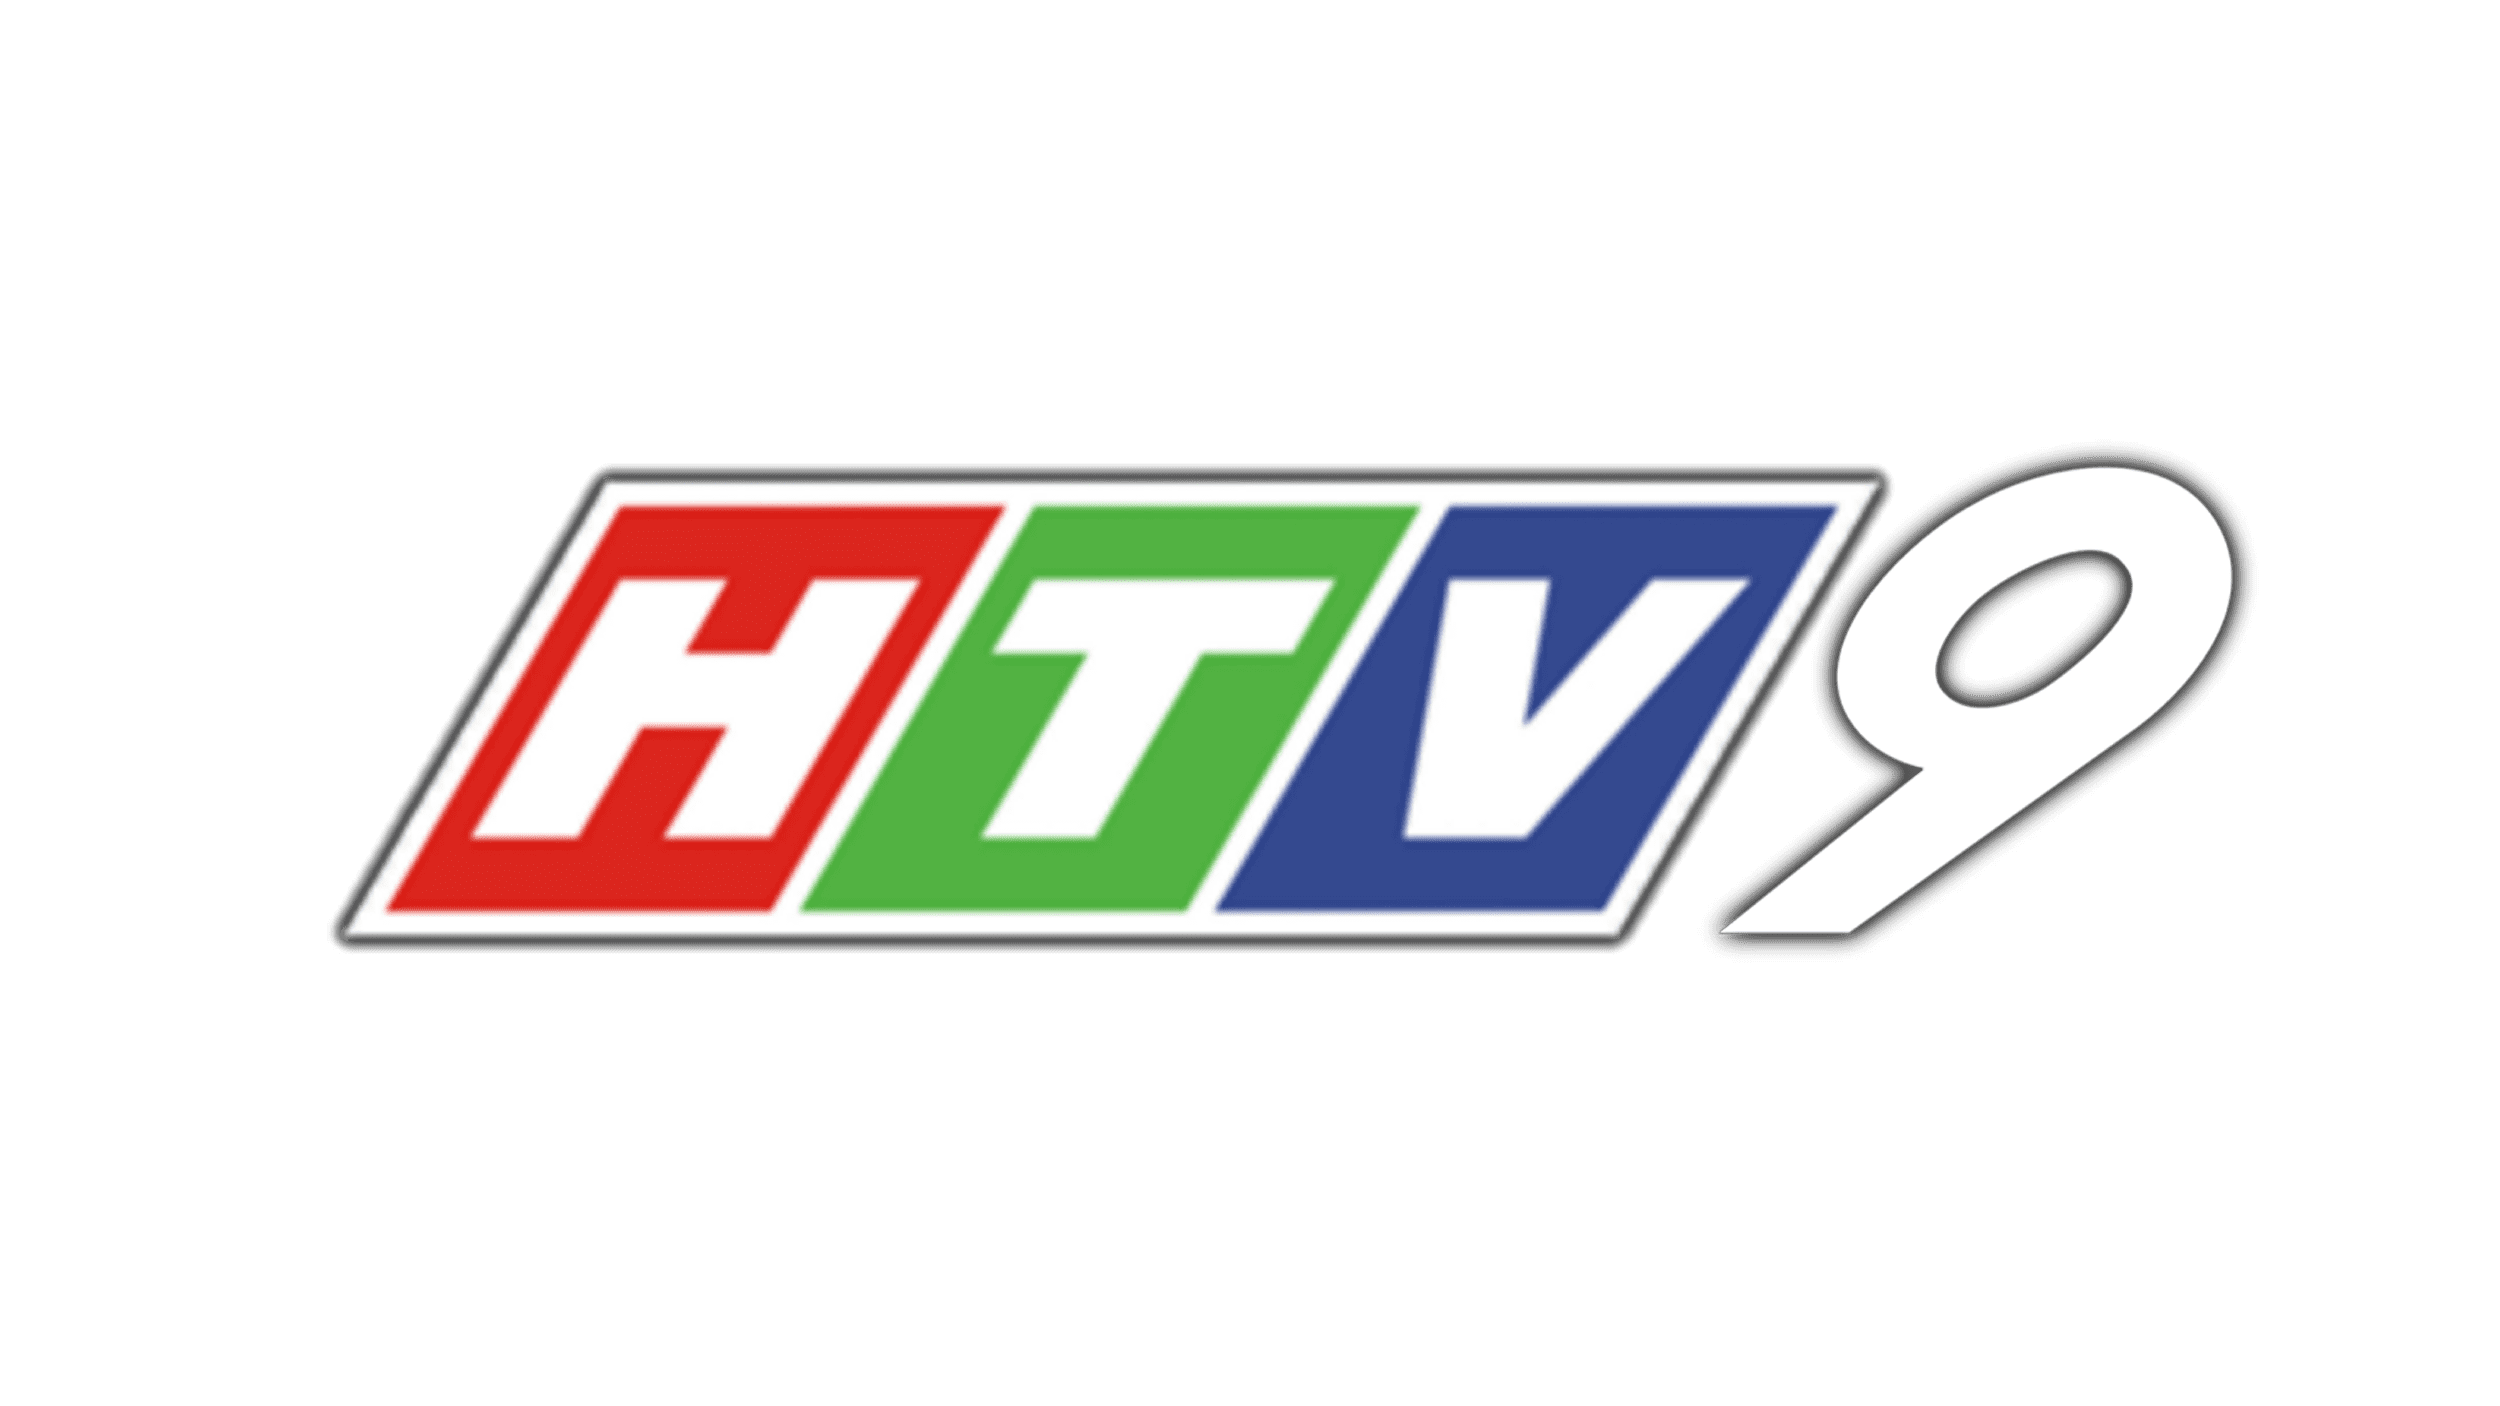 HTV9 Logo